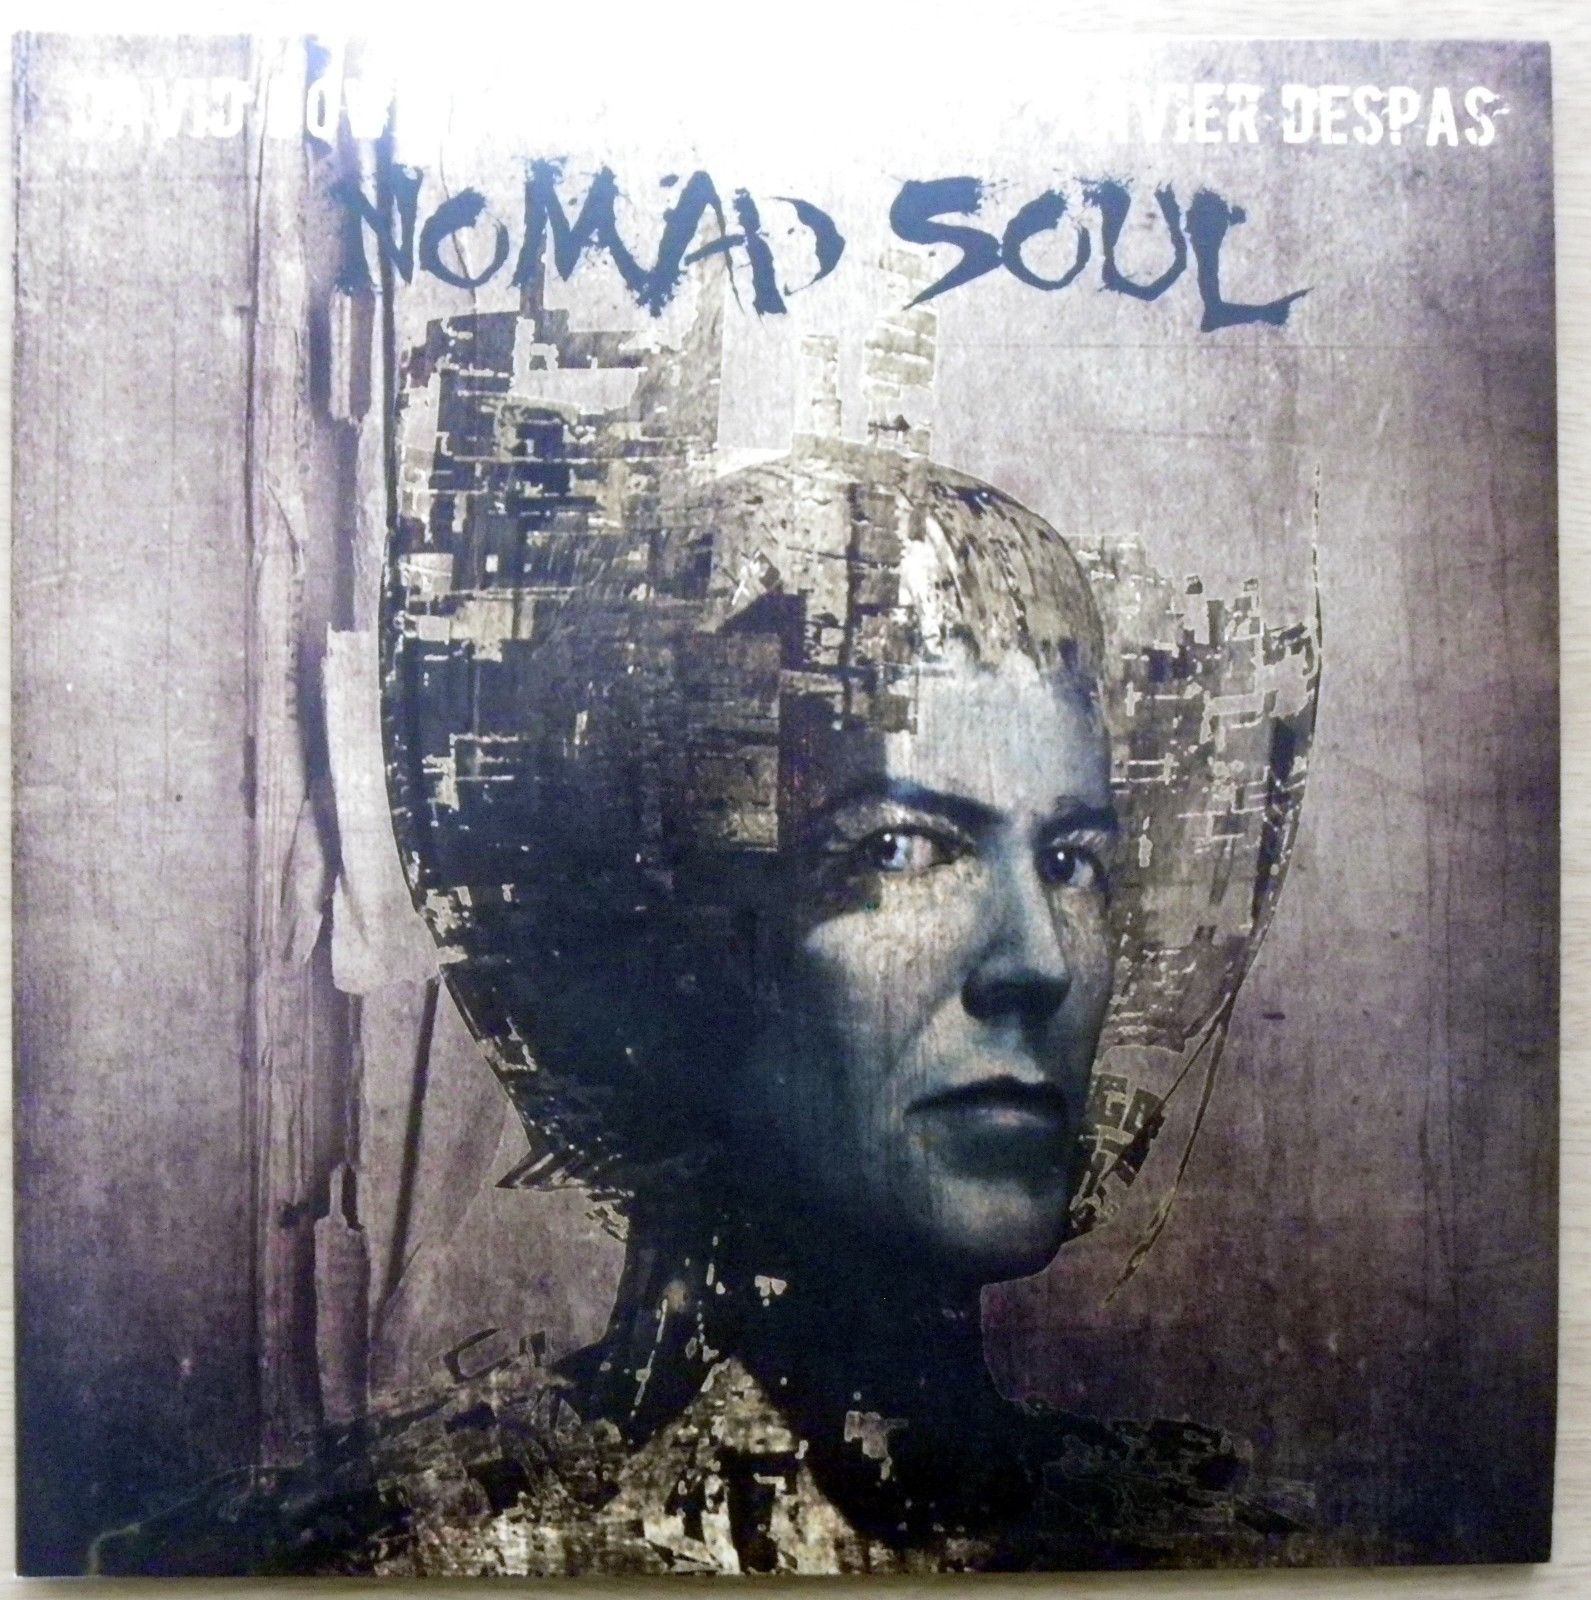 David Bowie - Nomad Soul  rare vinyl LP limited edition no. 080/250